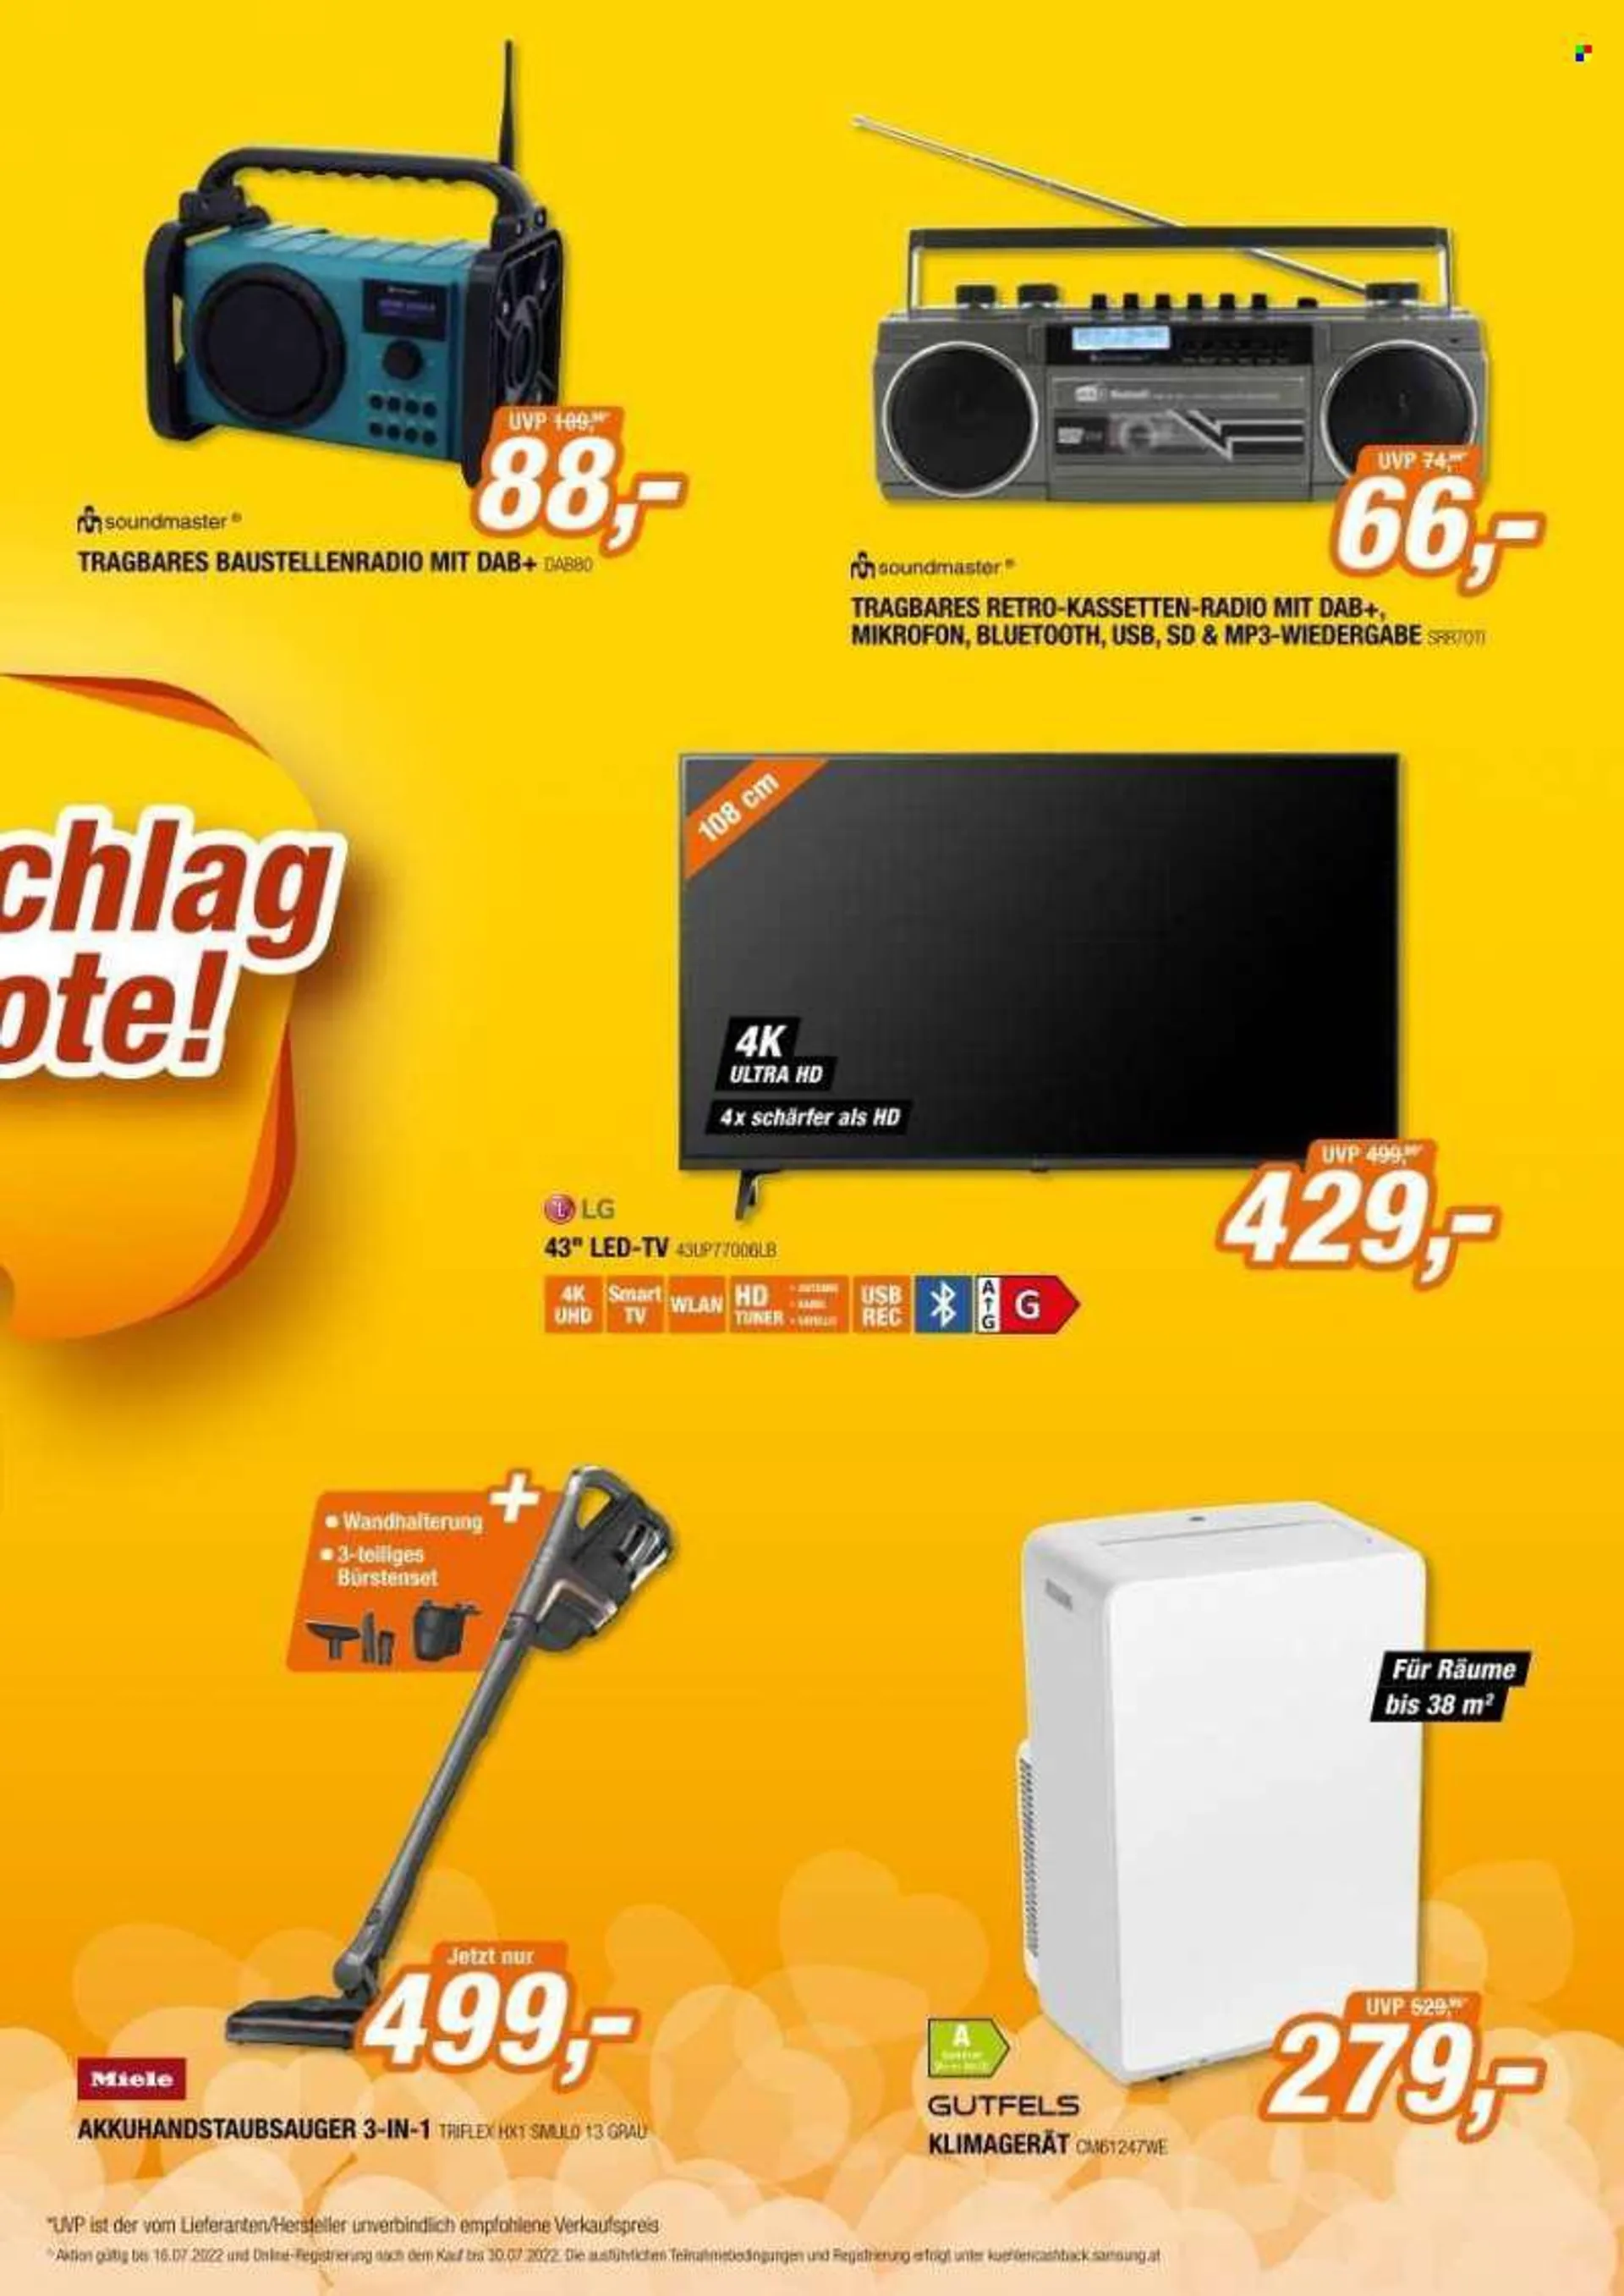 Angebote Expert - Verkaufsprodukte - Akku-Handstaubsauger, Samsung, LG, UHD-TV, LED TV, Radio, Mp3, Klimagerät. Seite 3.